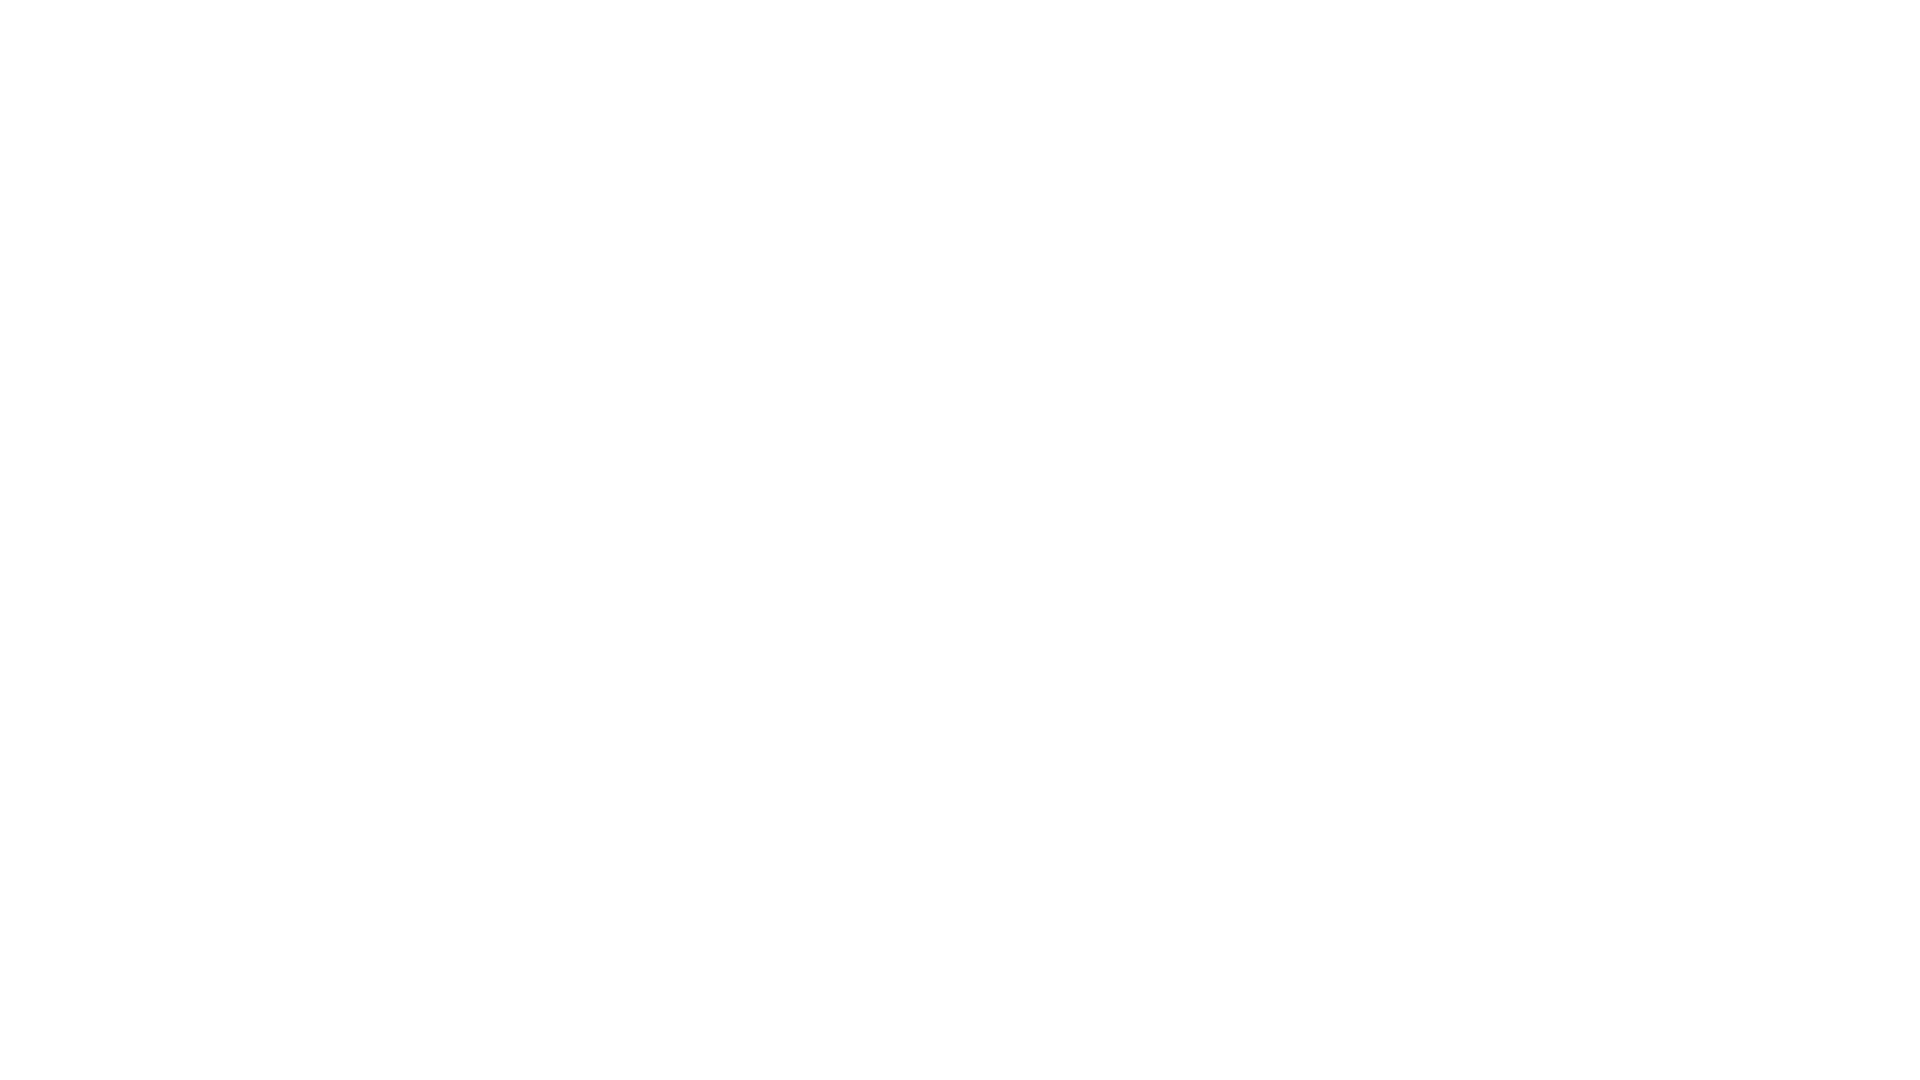 Danmarks Nationalparker